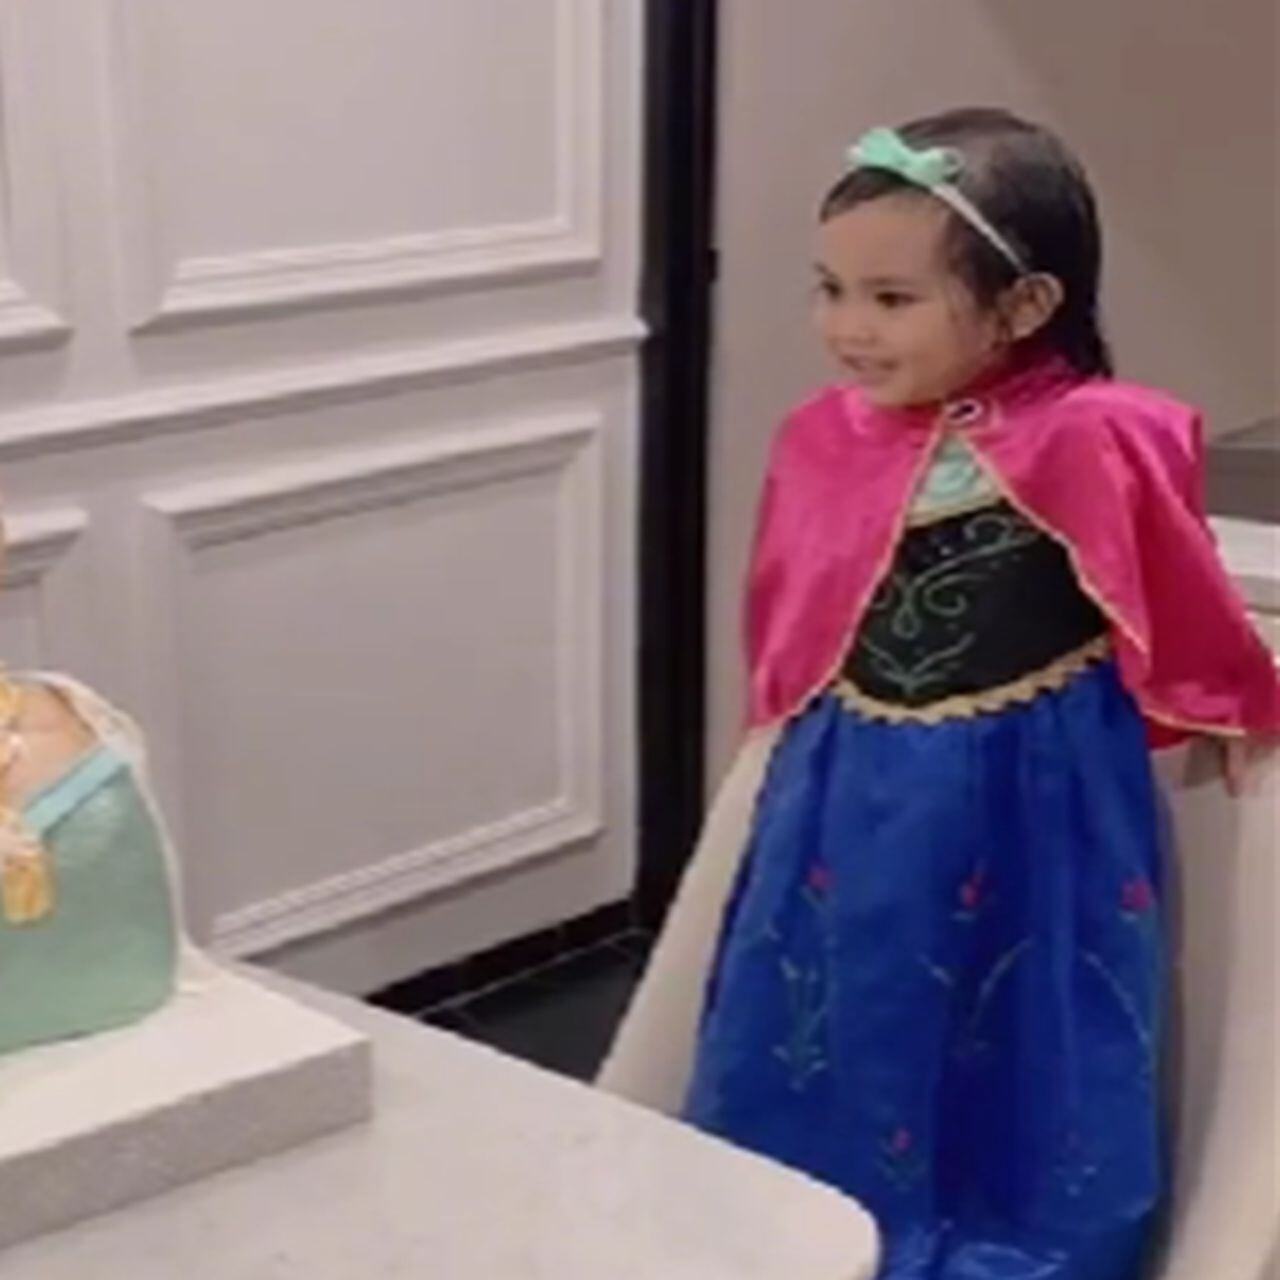 Niña recibe un pastel bien gacho de 'Frozen' y su reacción se hace viral